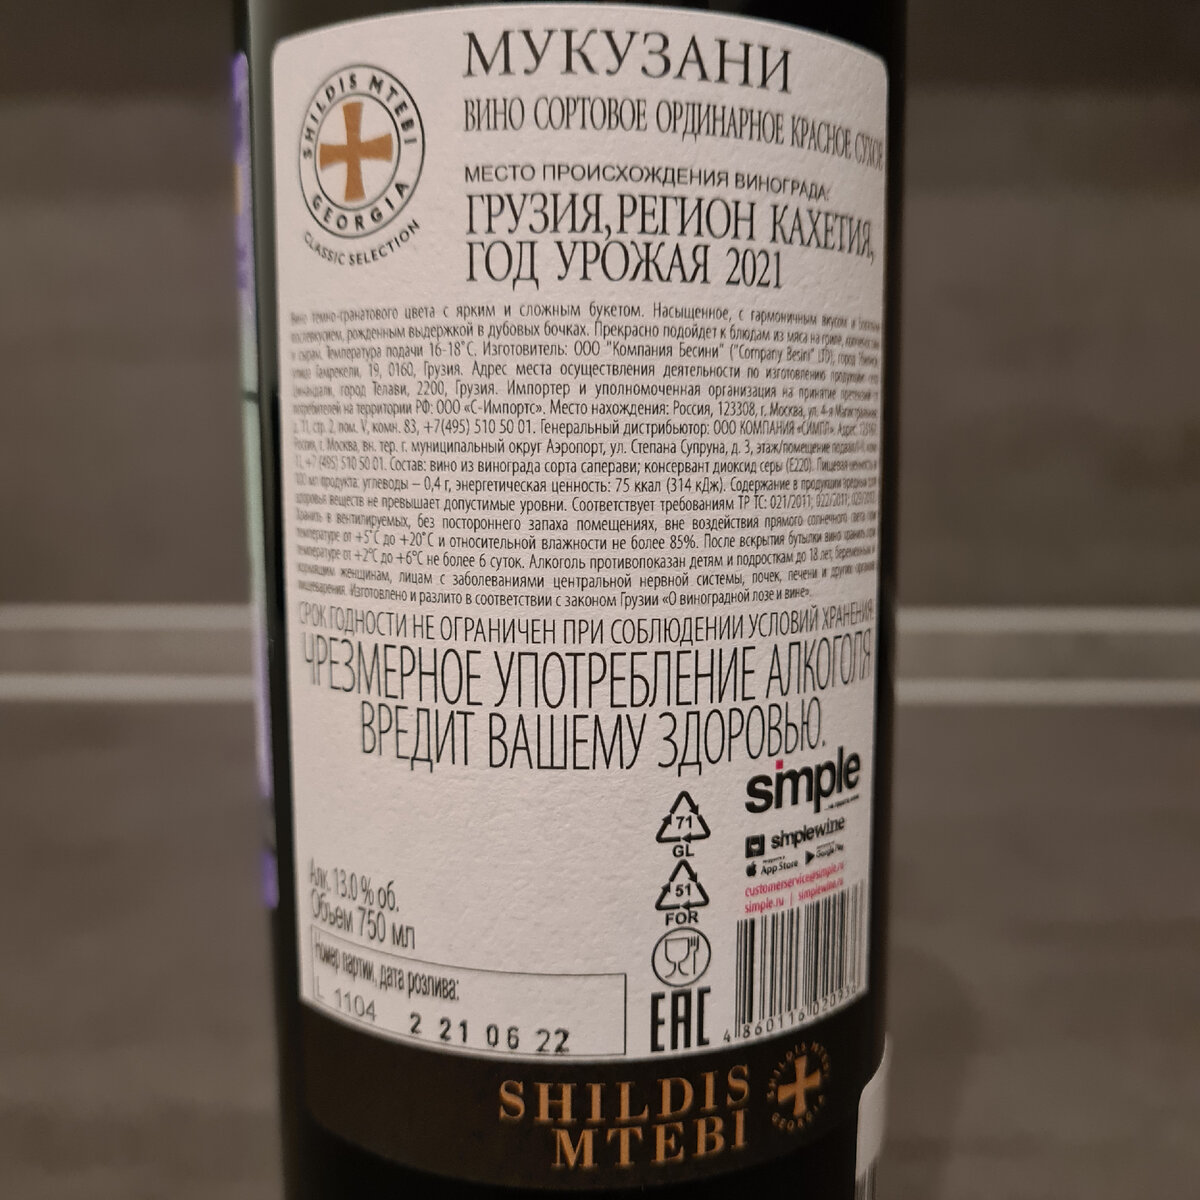 Сухое красное вино из сорта Саперави от ООО "Компания Бесини" из Грузии, "Мукузани", 2021.